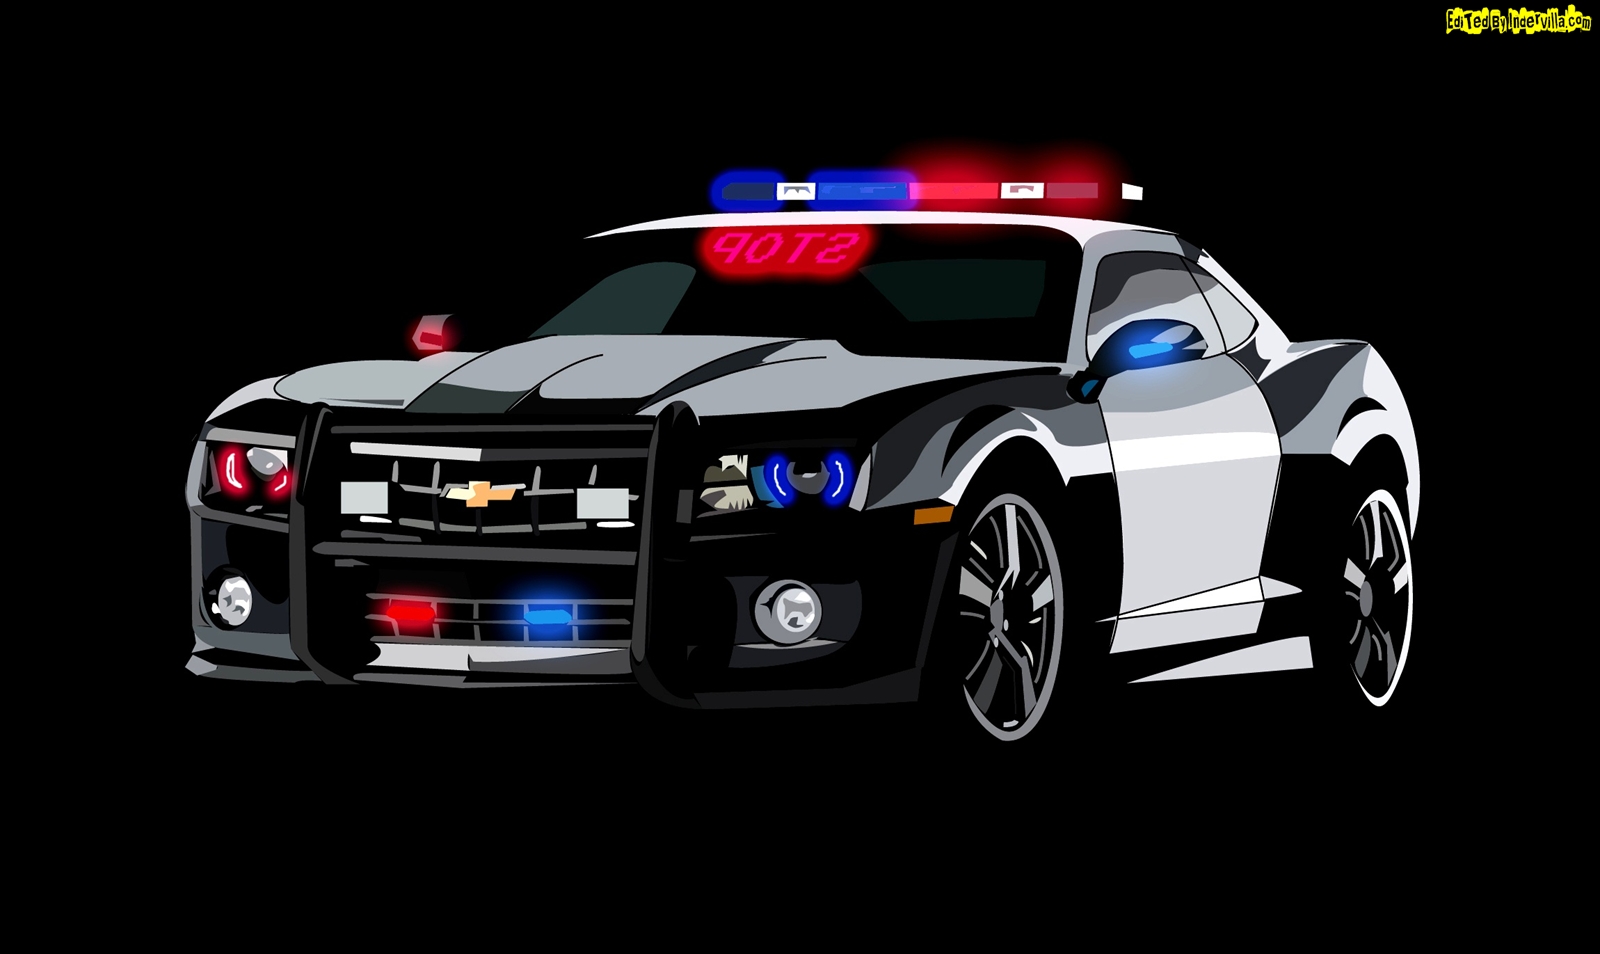 polizia wallpaper hd,veicolo terrestre,veicolo,auto,auto della polizia,chevrolet camaro